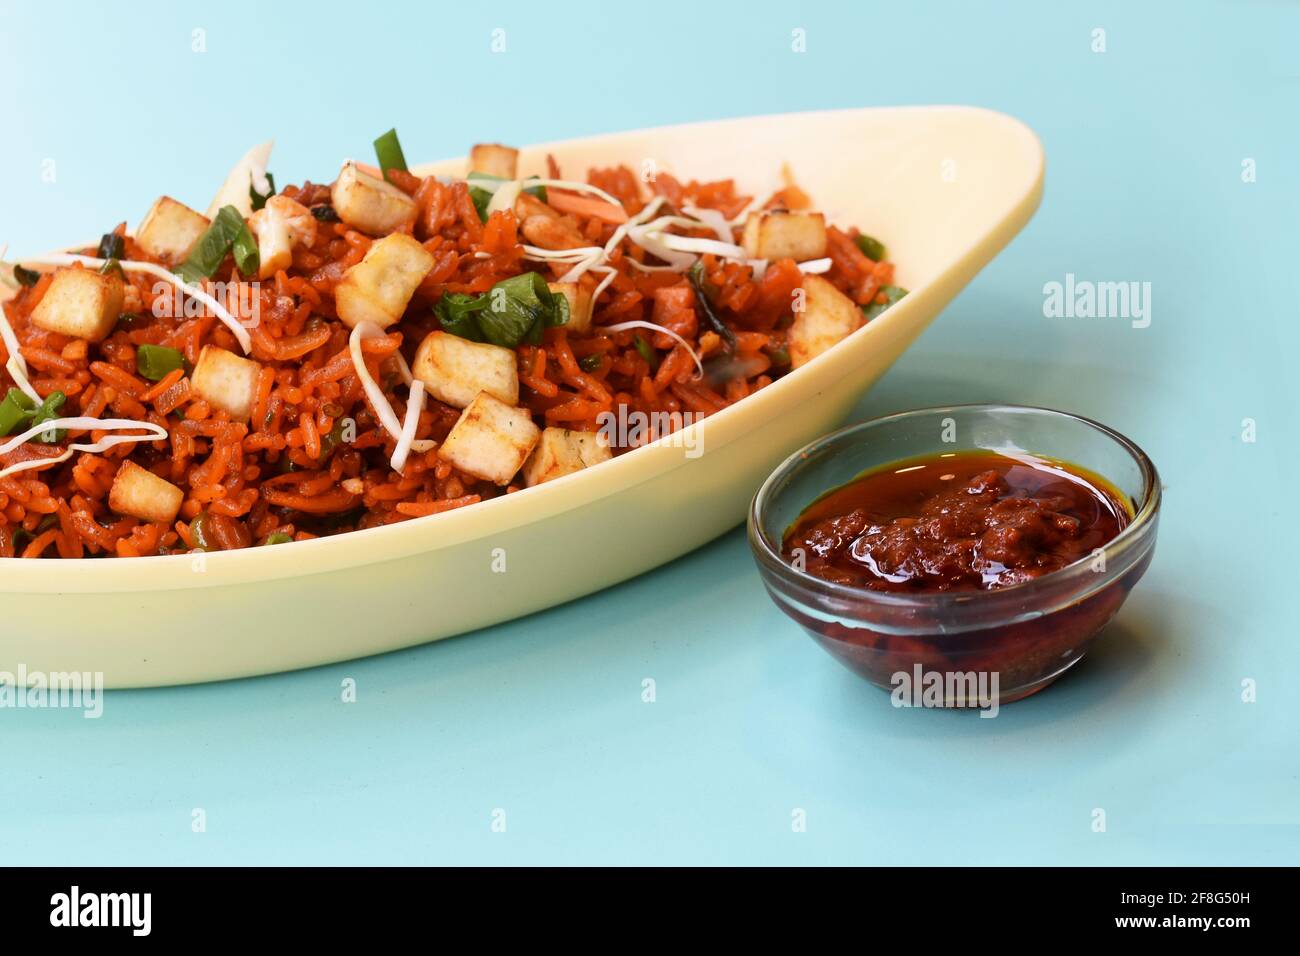 Riso fritto Schezwan paneer con salsa schezwan, riso cinese fritto con paneer, piatti della cucina indocinese Foto Stock